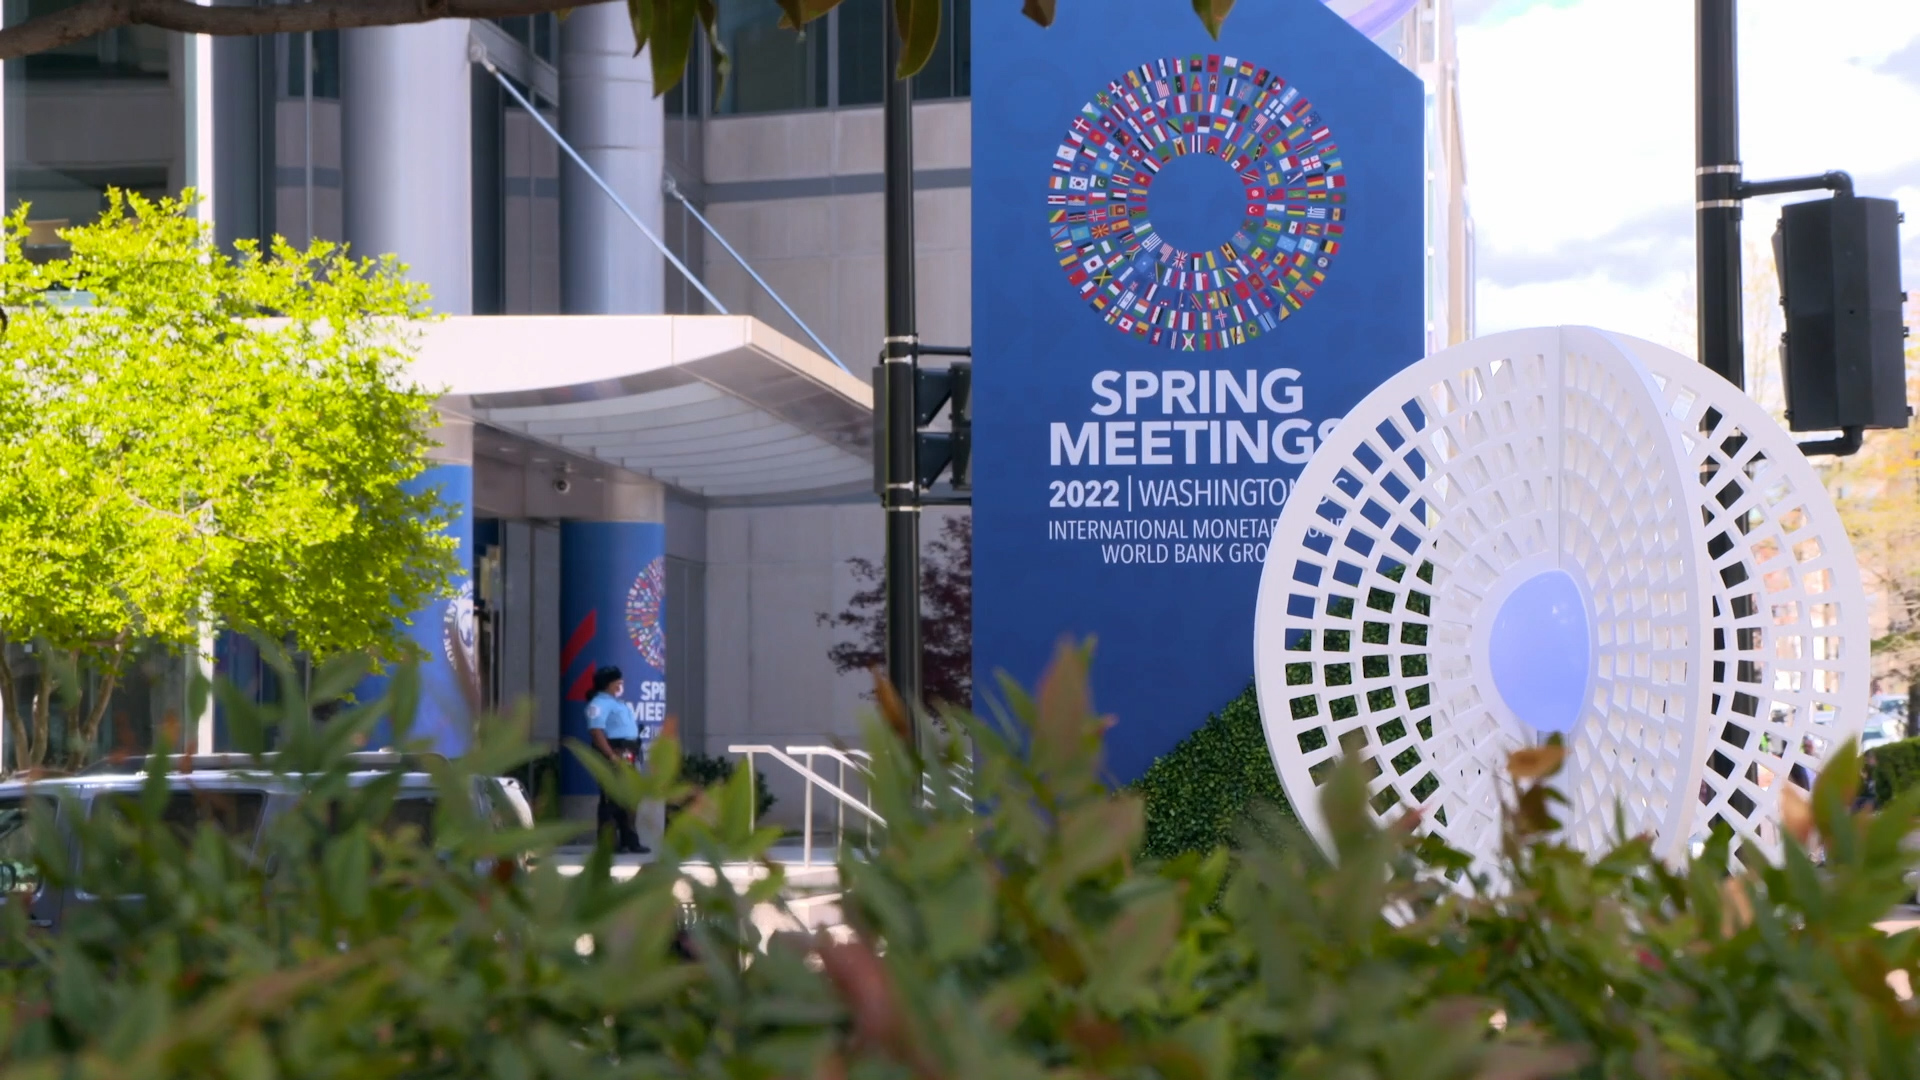 IMF Spring meetings 2022